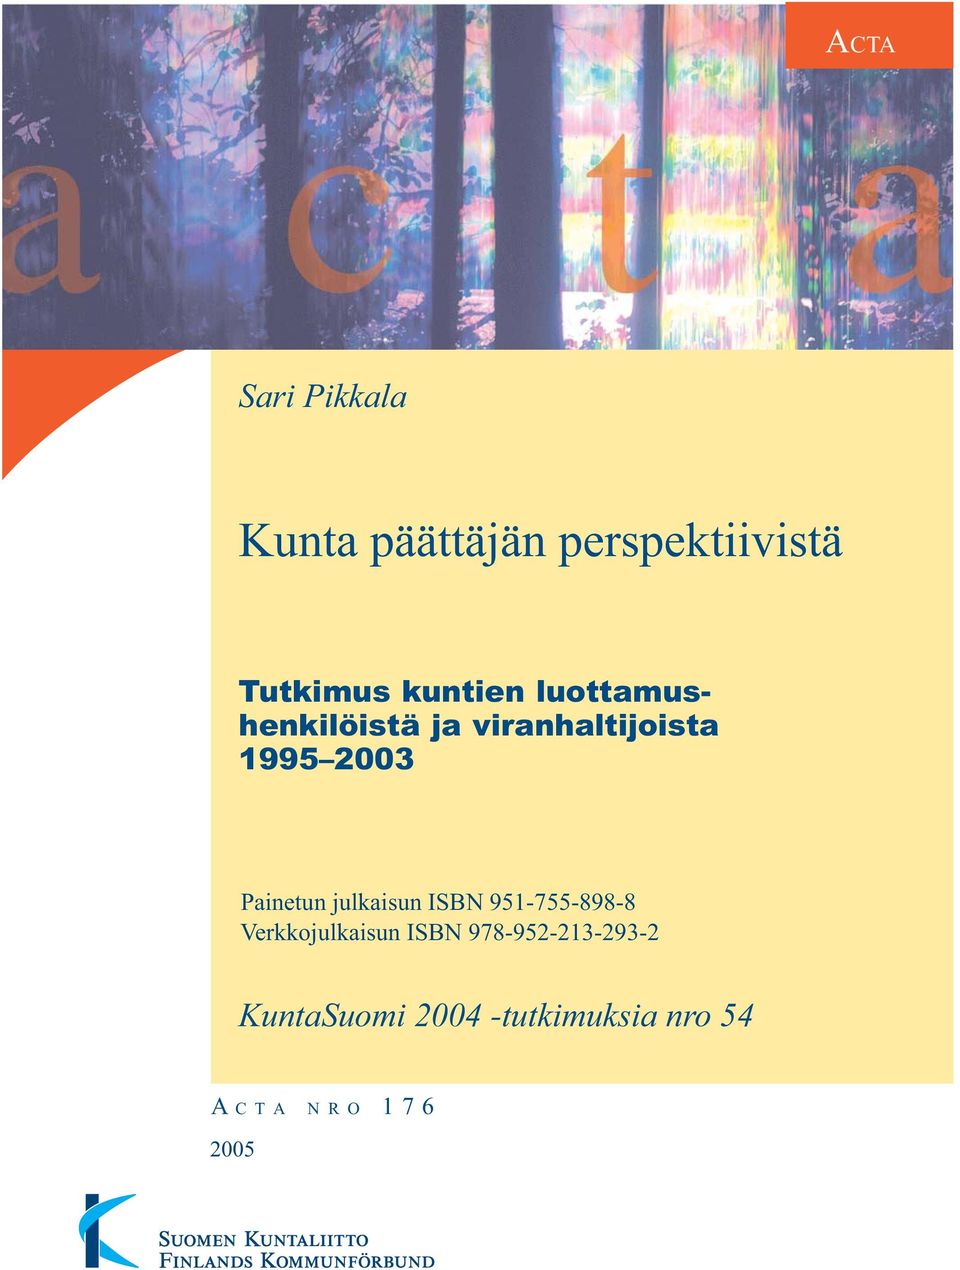 Painetun julkaisun ISBN 951-755-898-8 Verkkojulkaisun ISBN